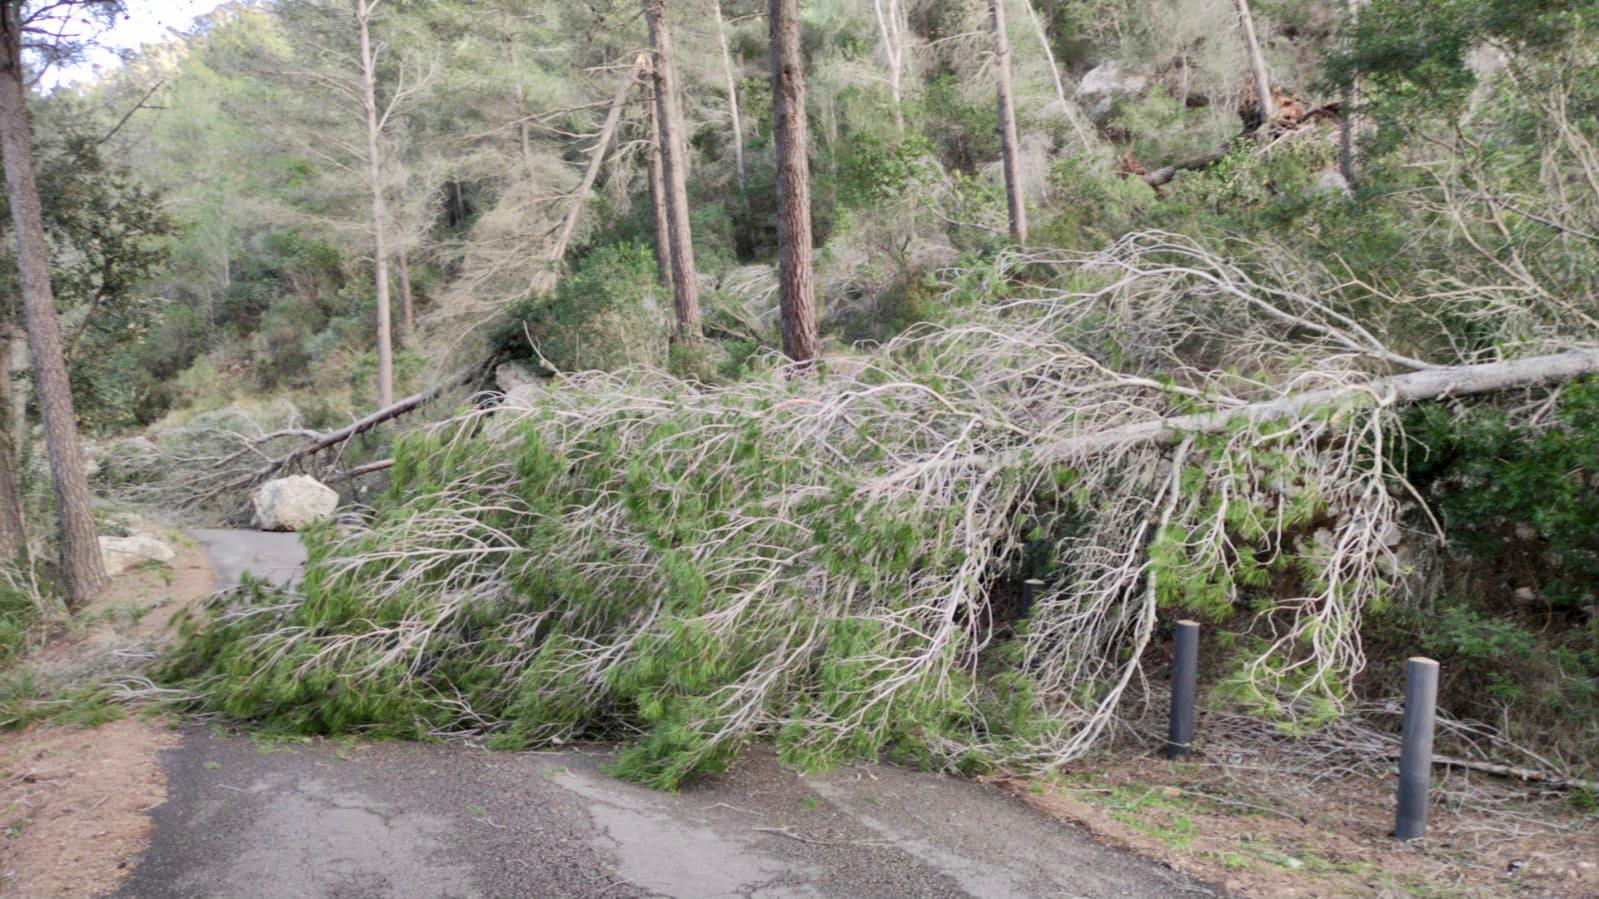 L'equip d'emergències en carreteres del Consell han atès 38 incidències per caiguda d'arbres, senyals o cablejat elèctric provocades per la tempesta Hortensia